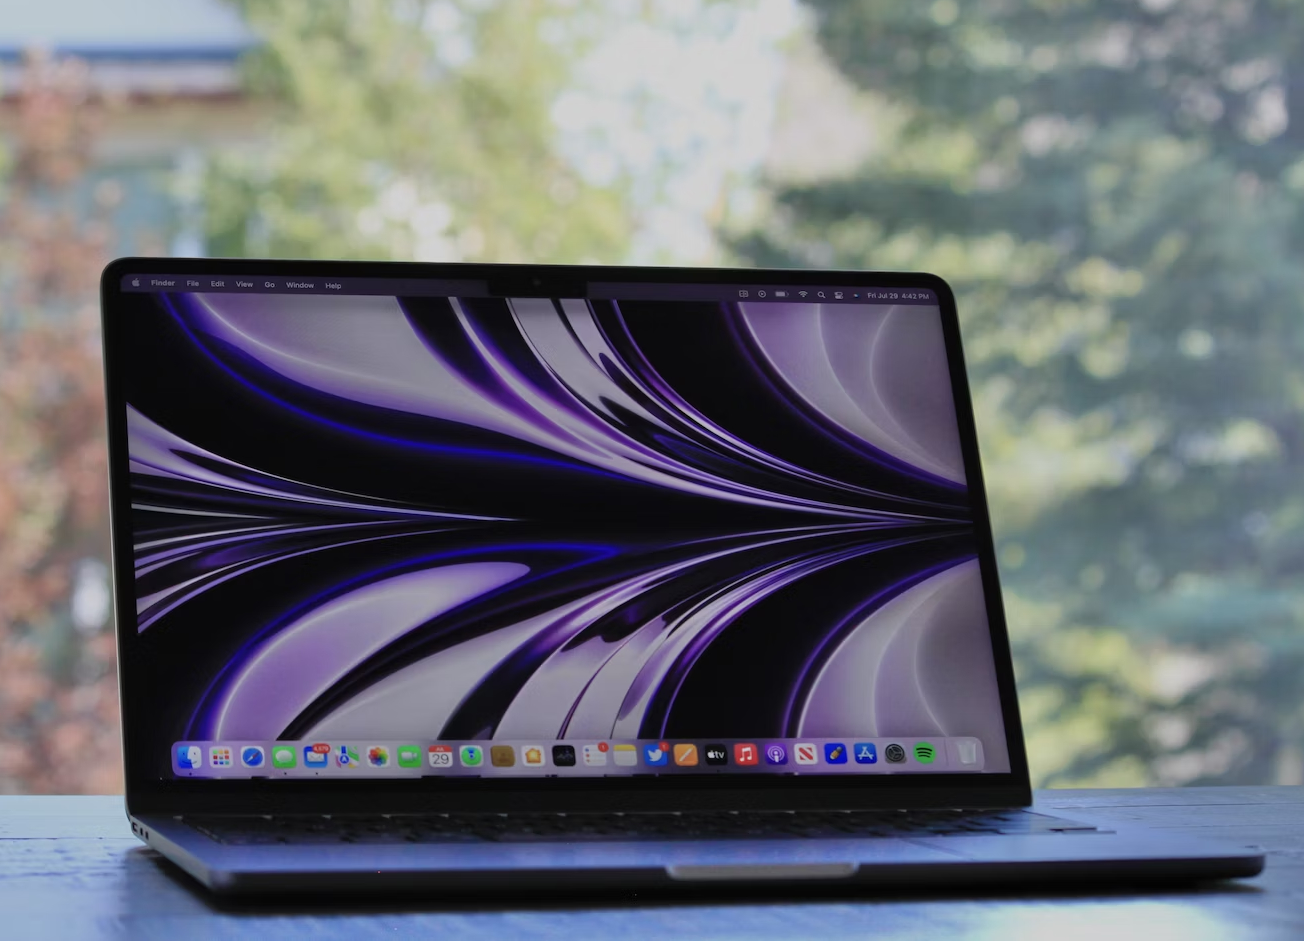 MacBook Air 15 : Apple lancera un ordinateur portable de 15 pouces